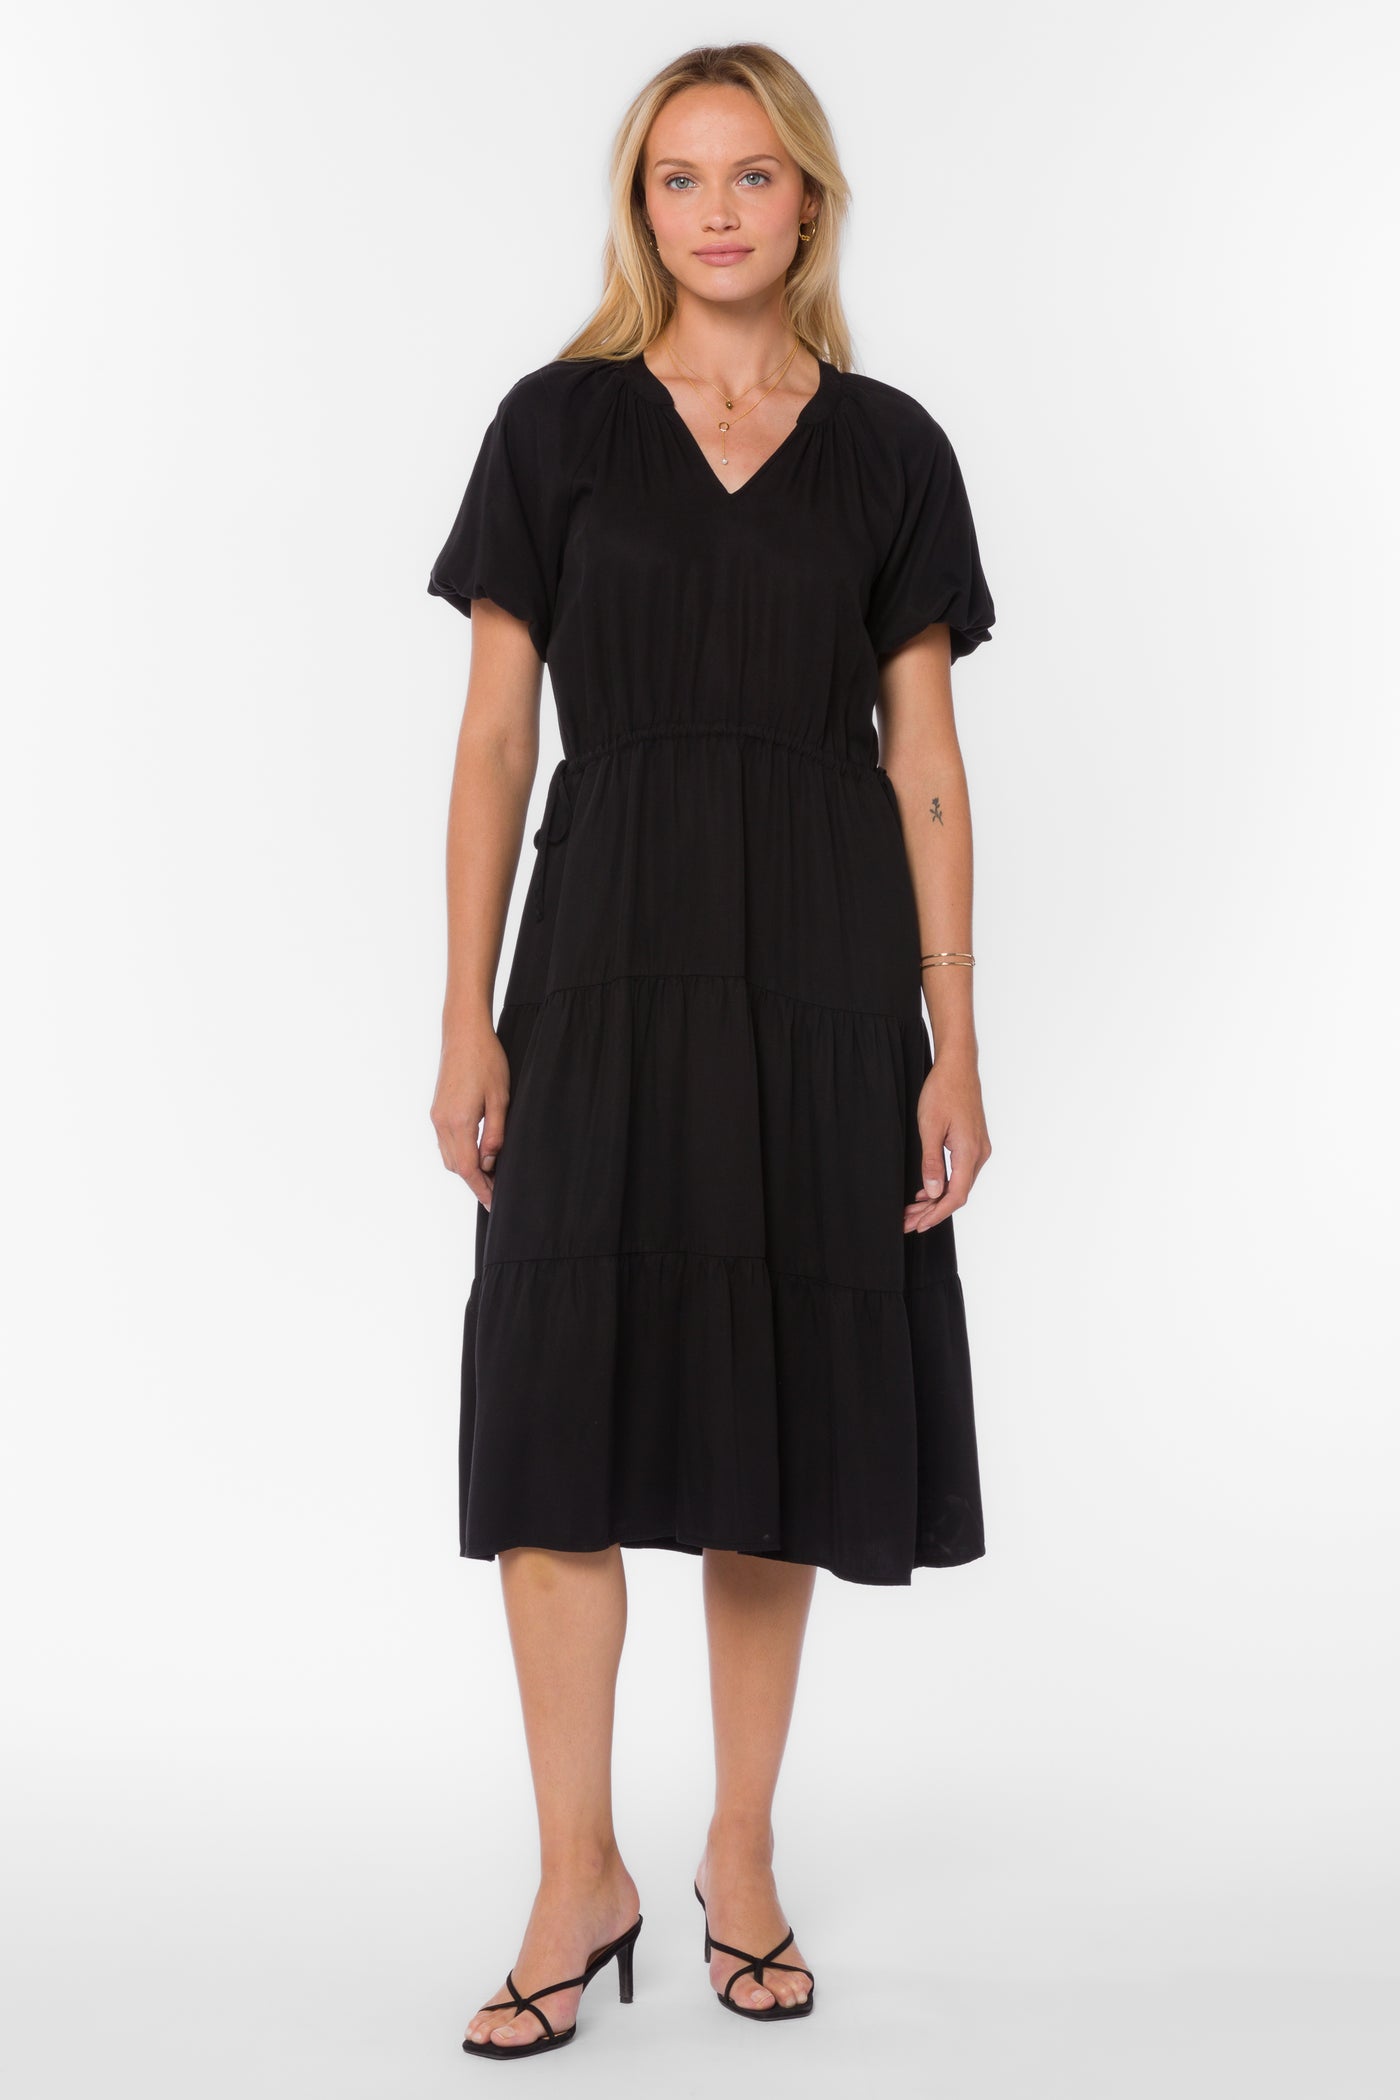 Cassie Black Dress - Dresses - Velvet Heart Clothing